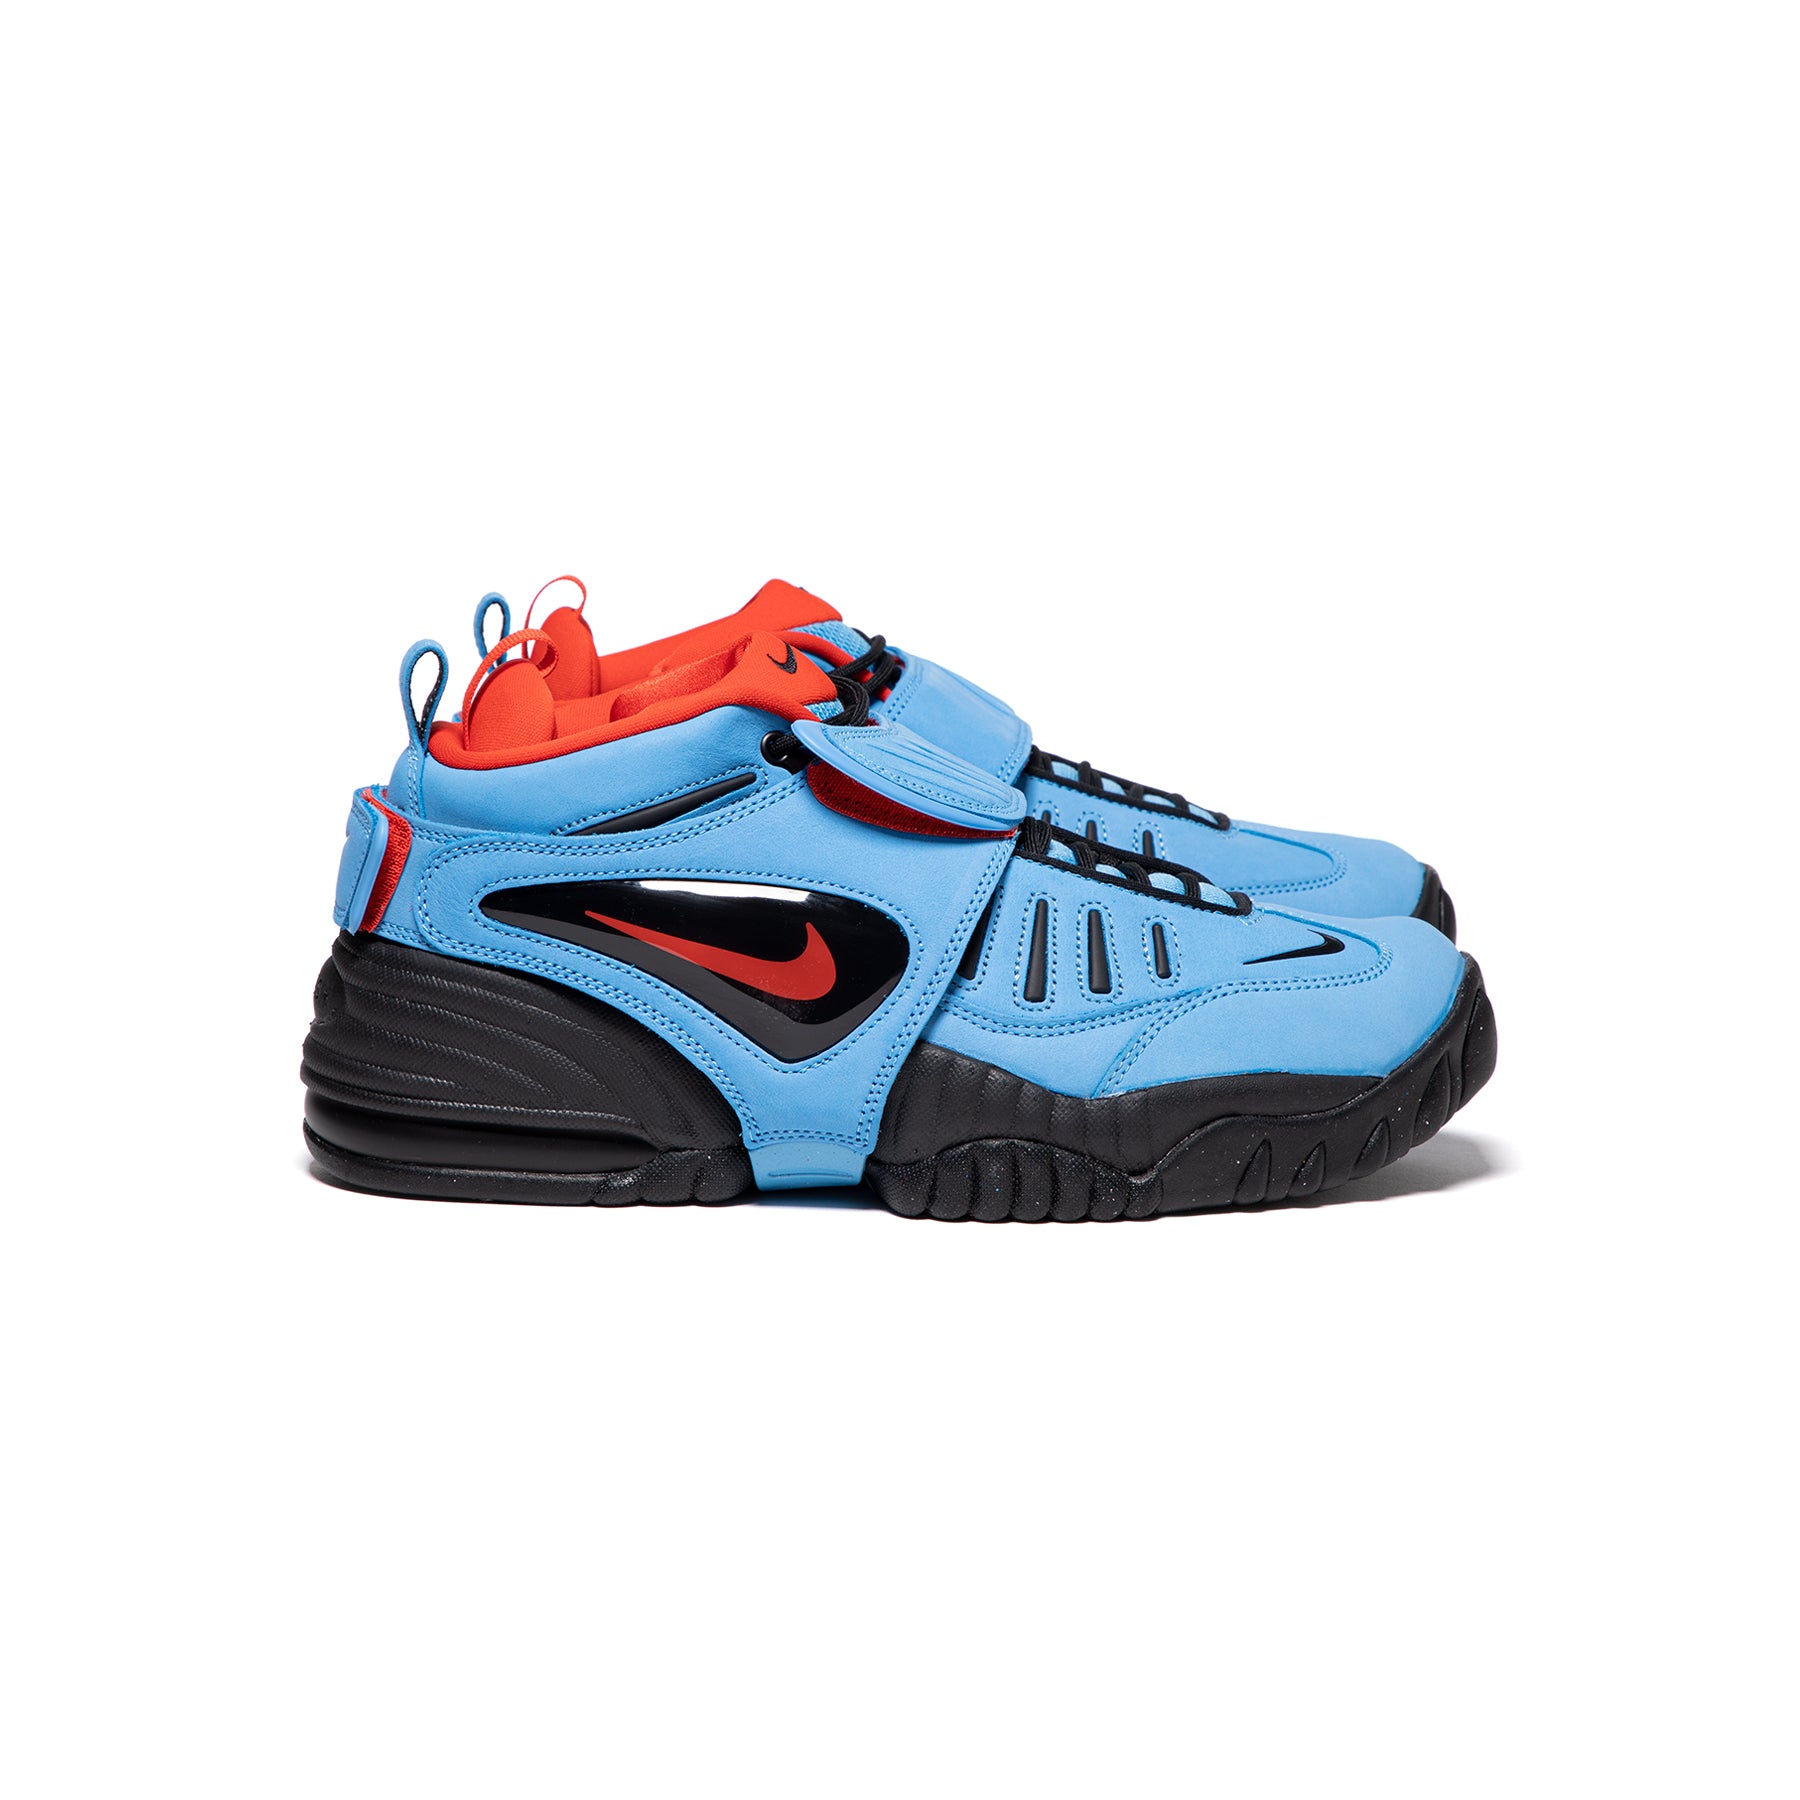 Nike Air Force 1 Low x Ambush Men's Shoes Size 10 (Blue)